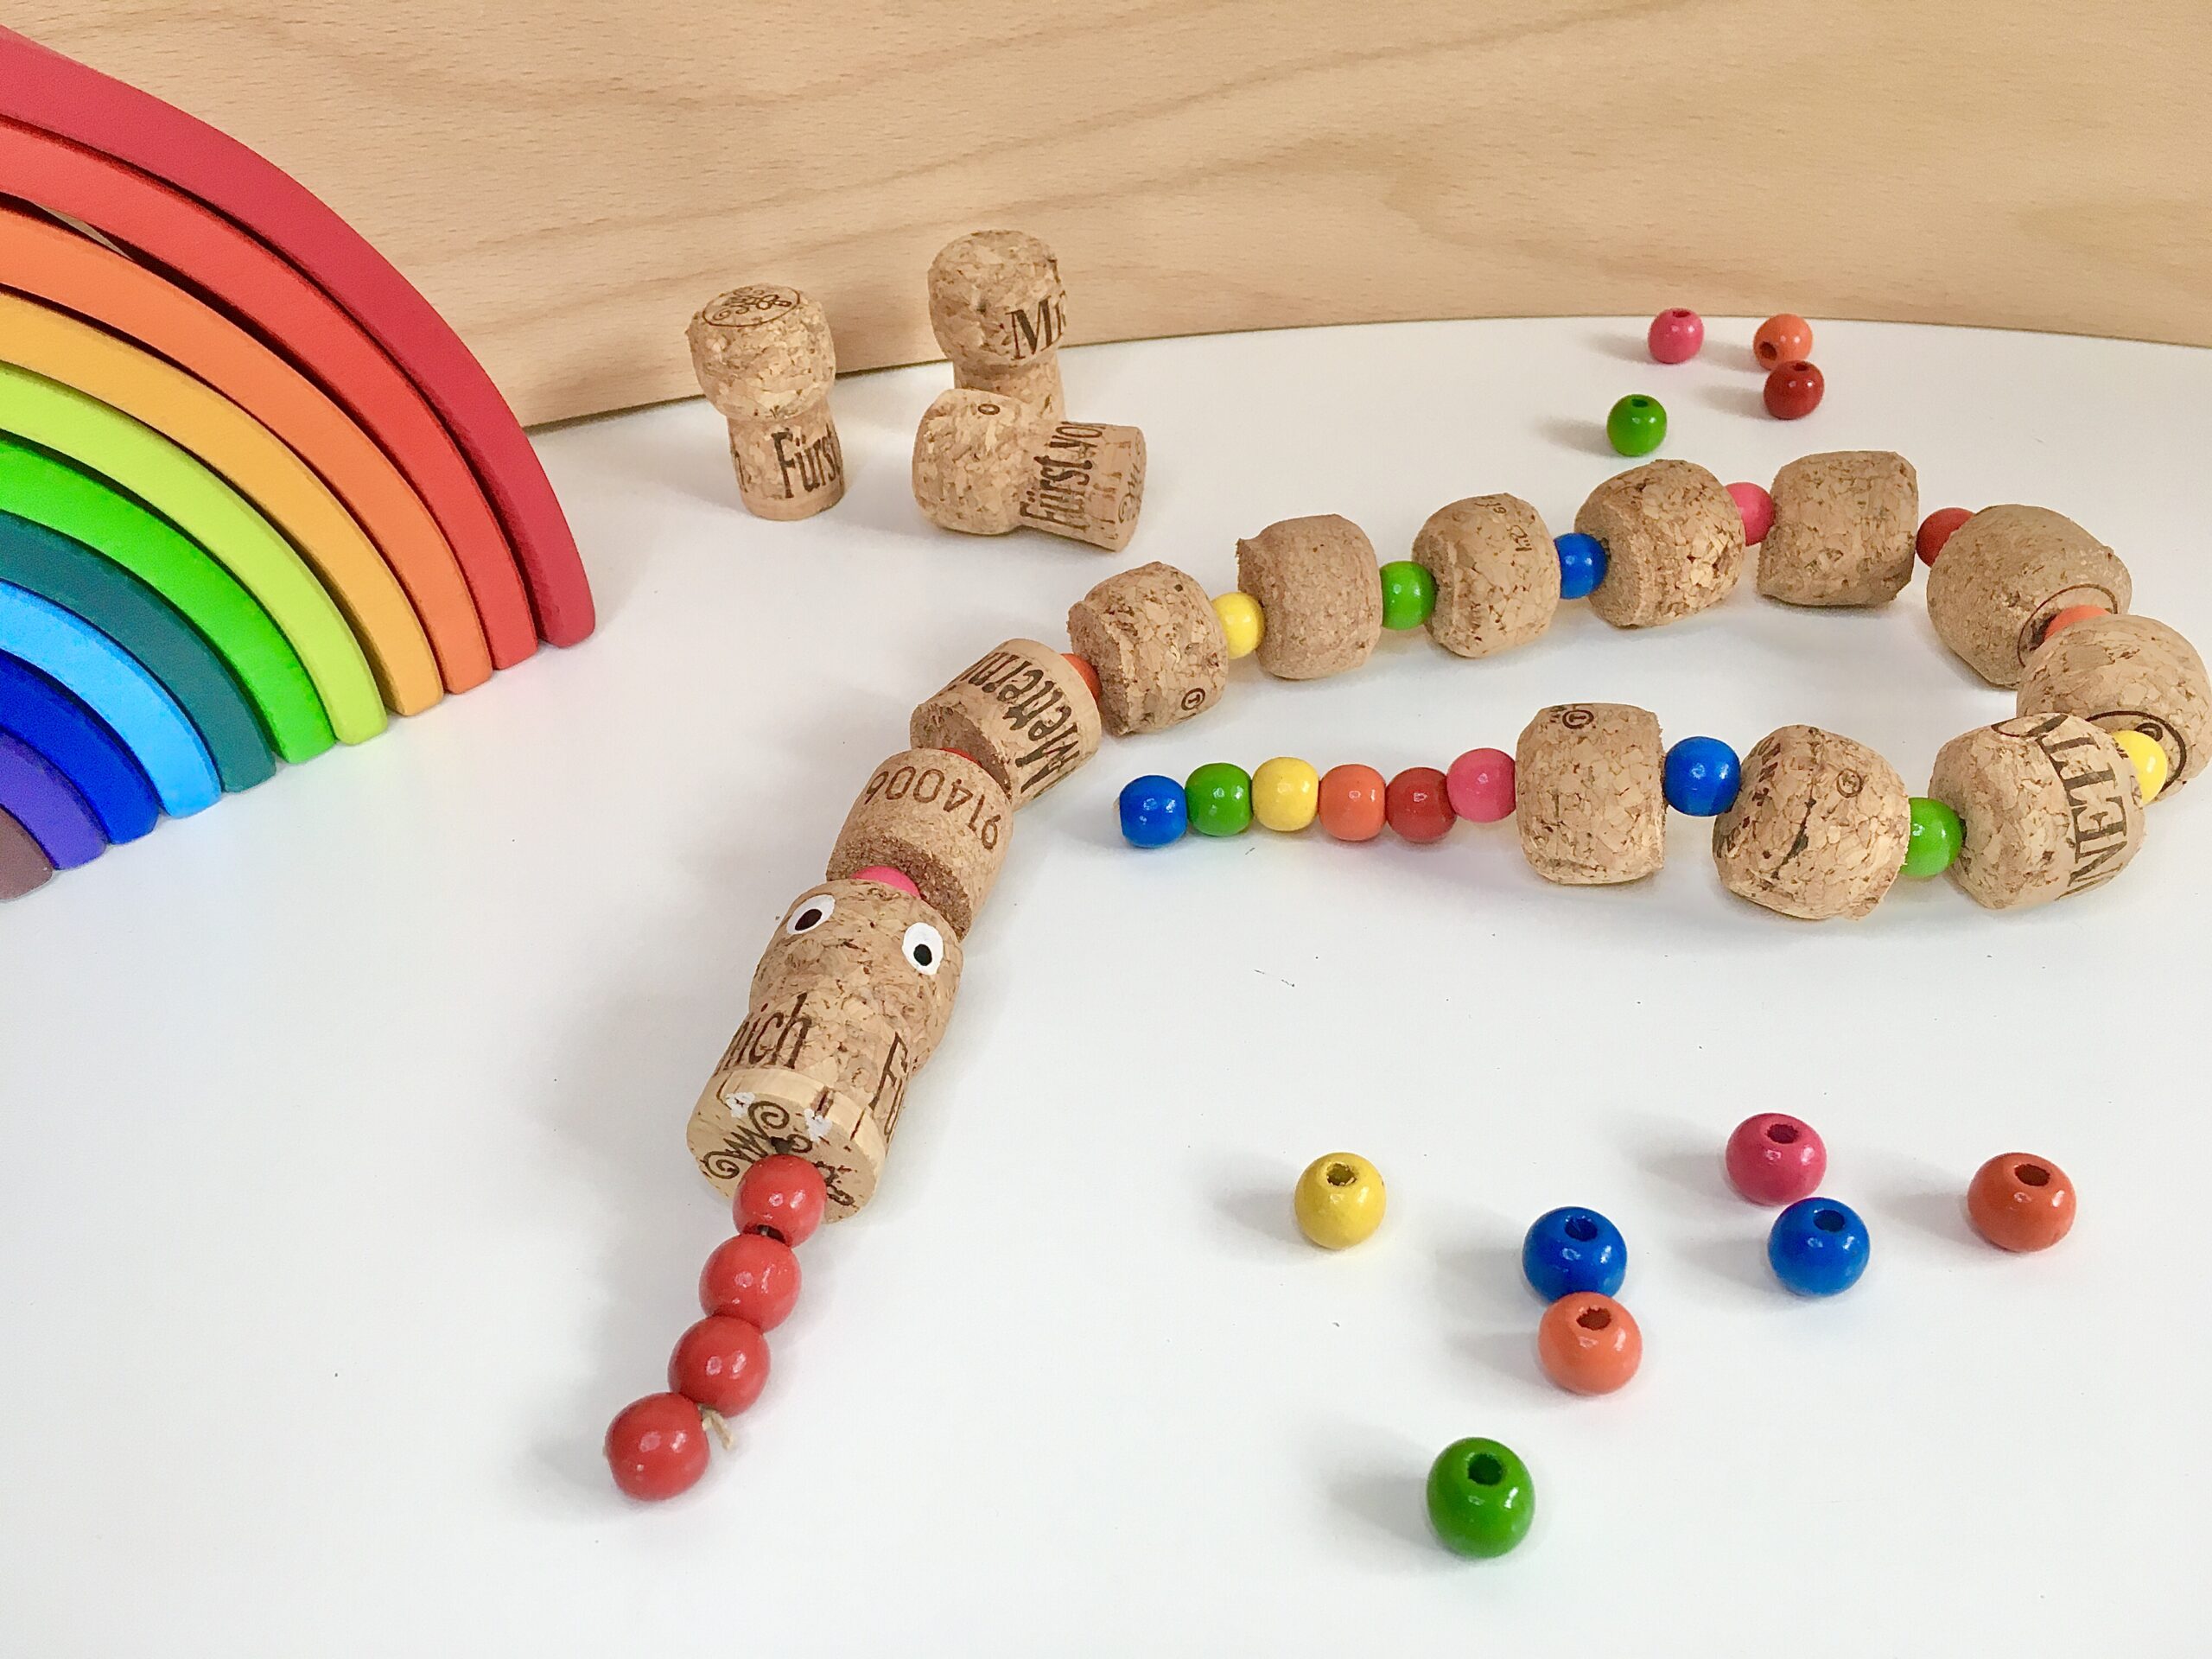 Regenbogen-Schlange aus Korken, Perlen, Spielzeug, #bastelnmitkindern #upcycling bunt, fantasiewerk.ch 